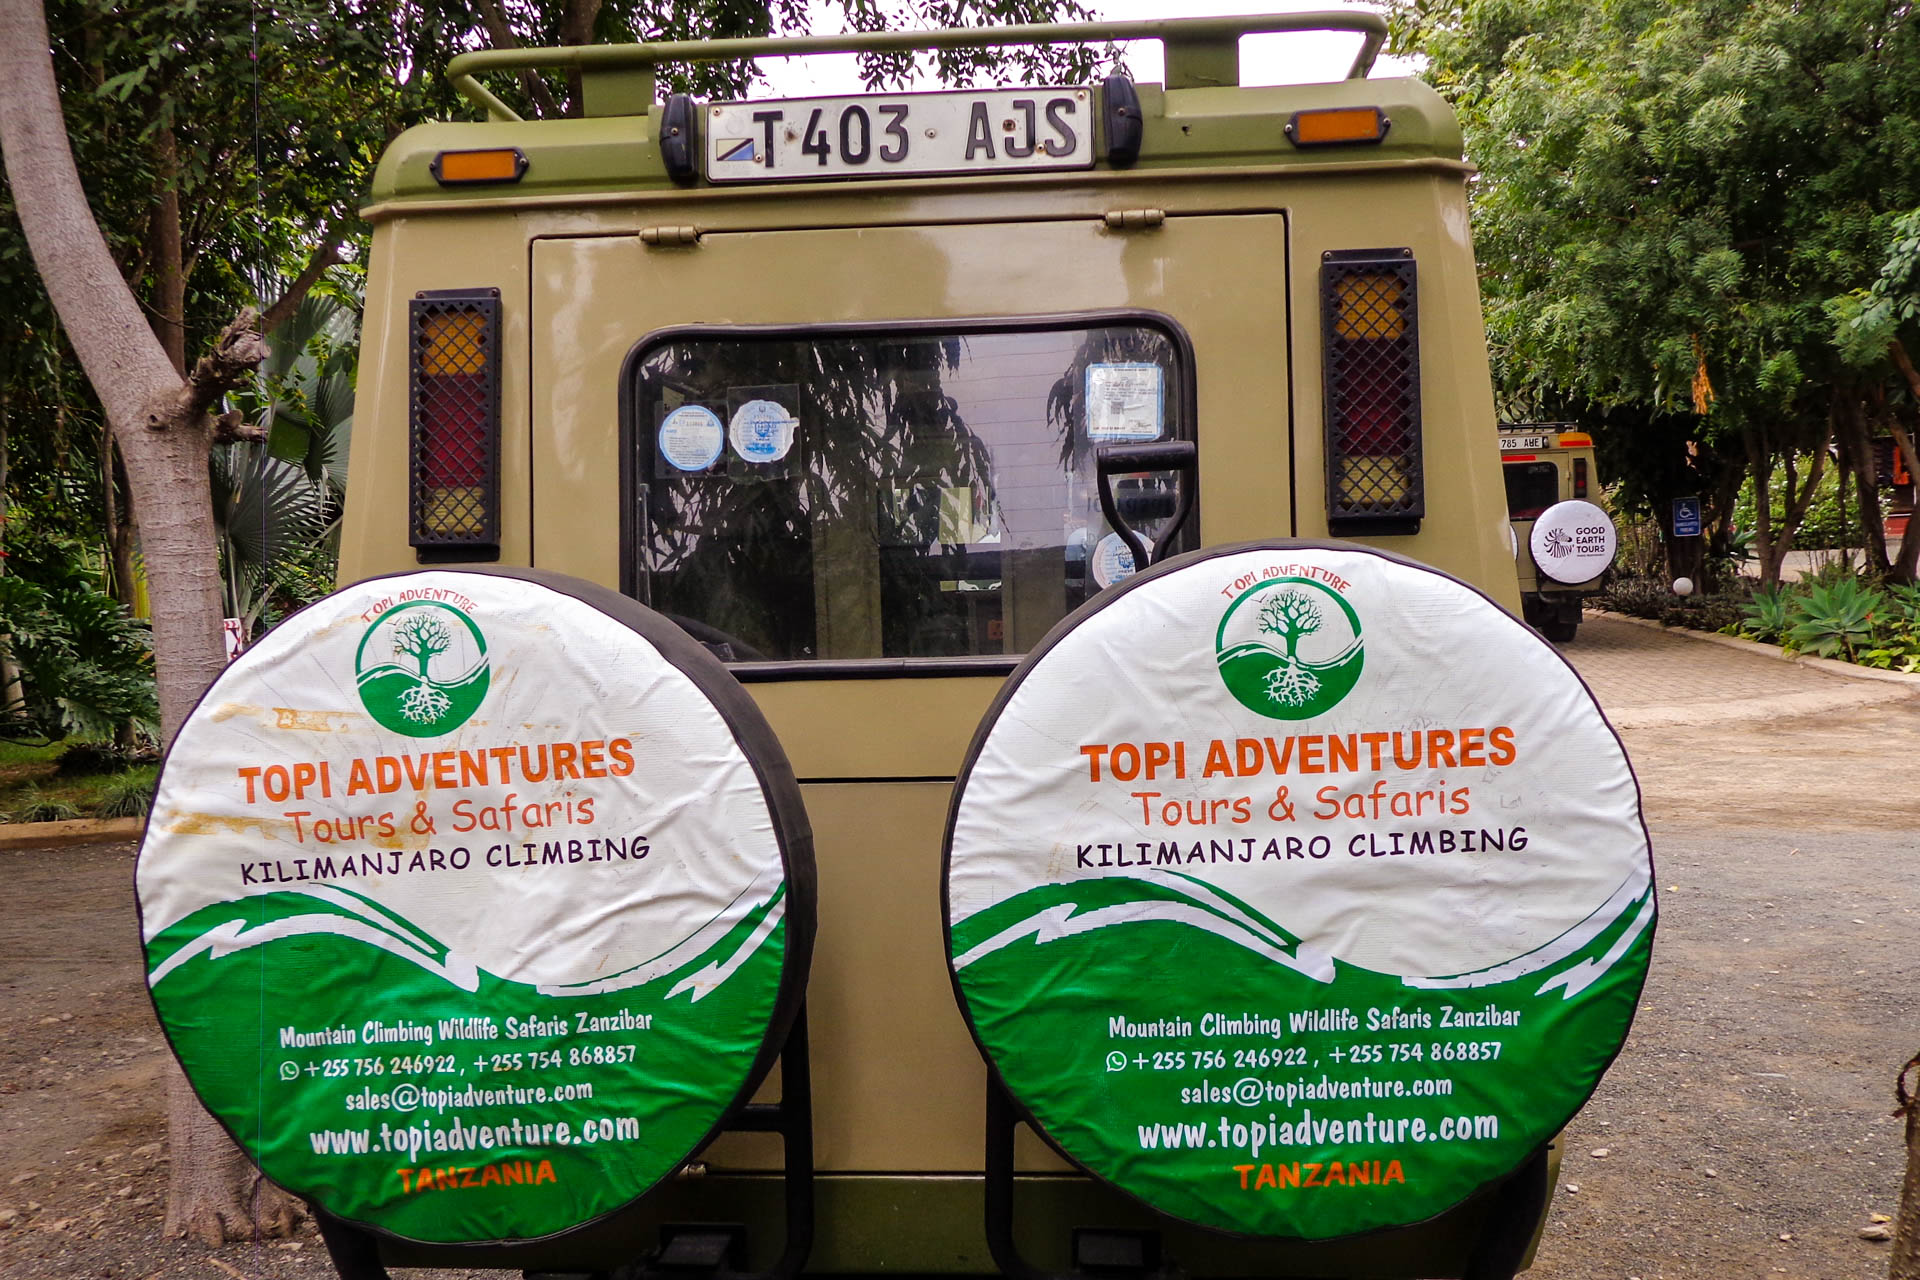 How Many Days Should I Spend On Tanzania Safari?